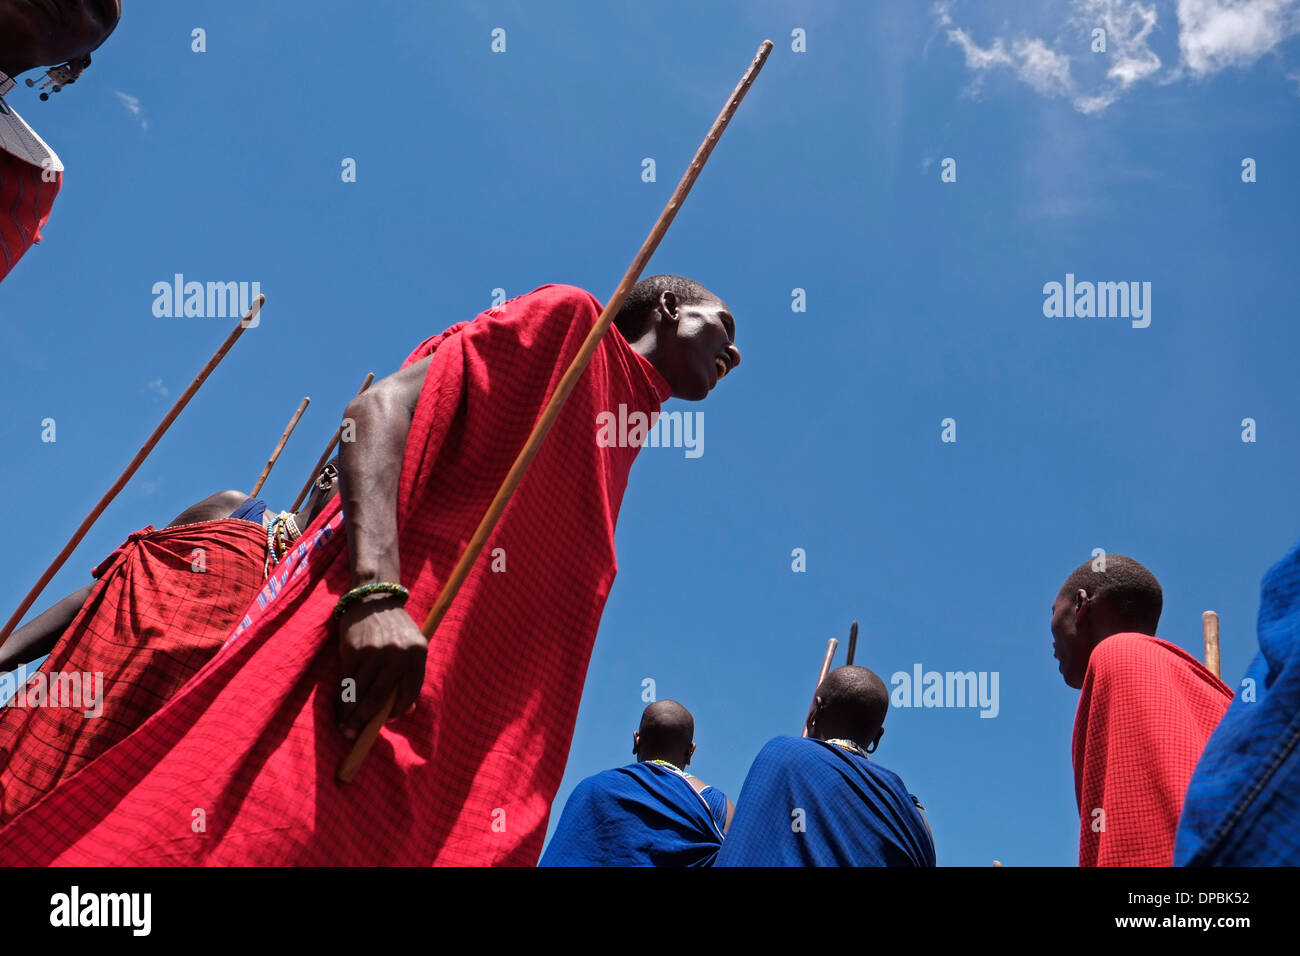 Maasai Krieger Tragen eines traditionellen roten shuka Robe, führen Sie eine Art von März - Vergangenheit während des traditionellen Eunoto ceremony in einem kommenden alt Zeremonie für junge Krieger in der Masai Stamm in der Ngorongoro Conservation Area im Krater im Hochland von Tansania Ostafrika durchgeführt Stockfoto